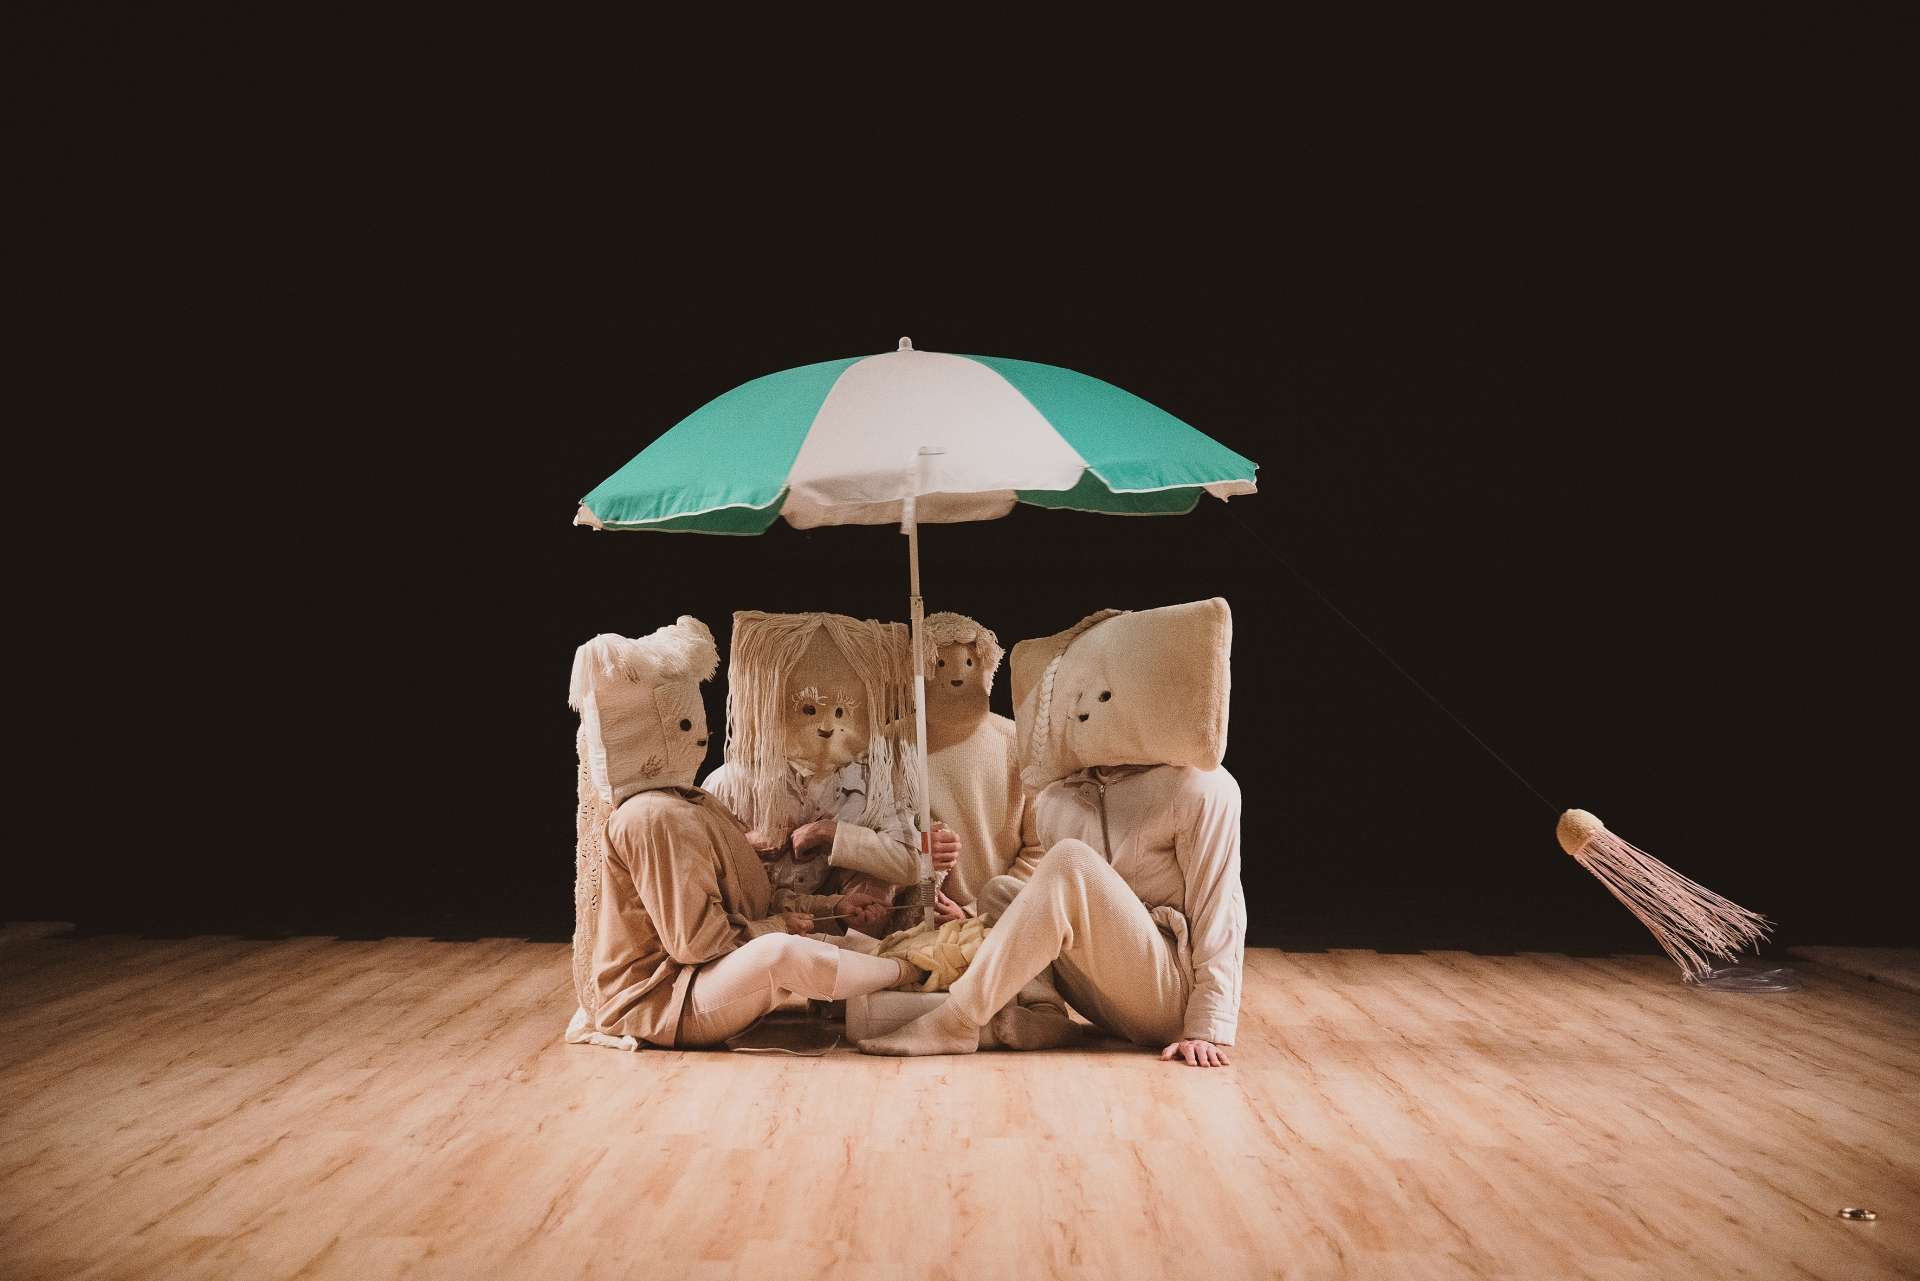 Photo du spectacle La Maison de mon esprit où les 4 personnages sont assis sous un parasol vert et blanc